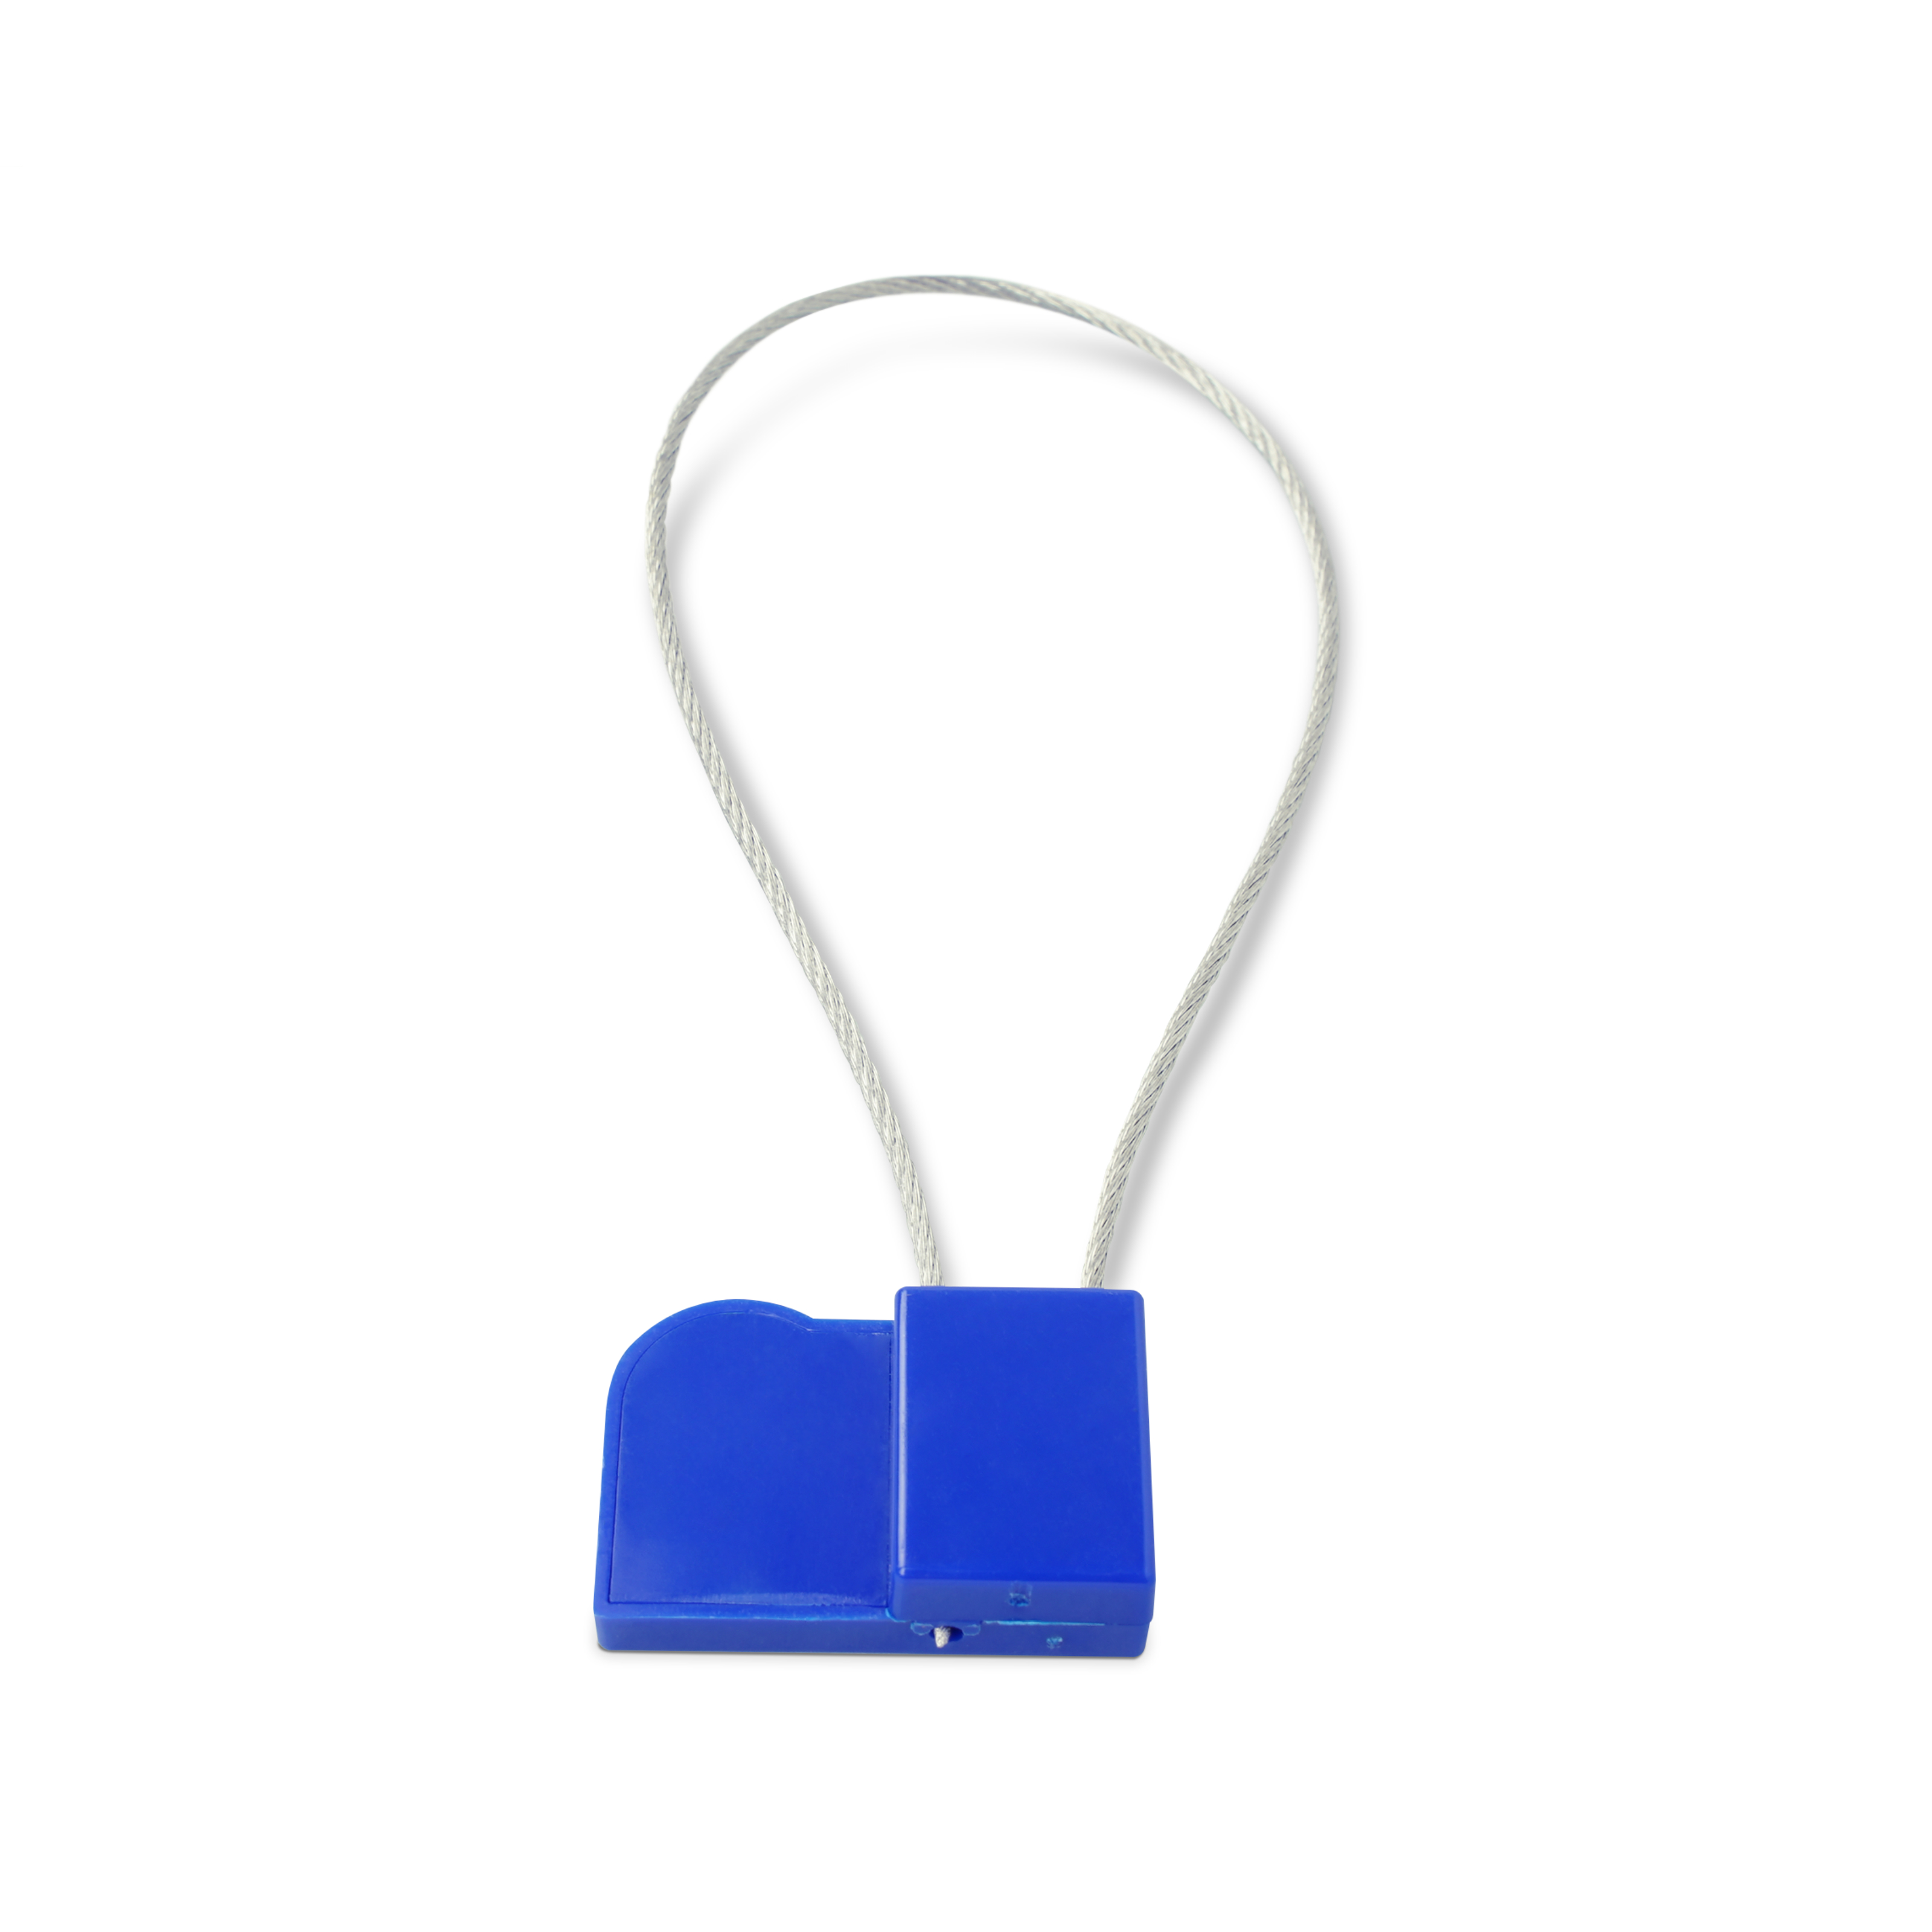 Liegende NFC Plombe mit Stahlschlaufe aus ABS in blau